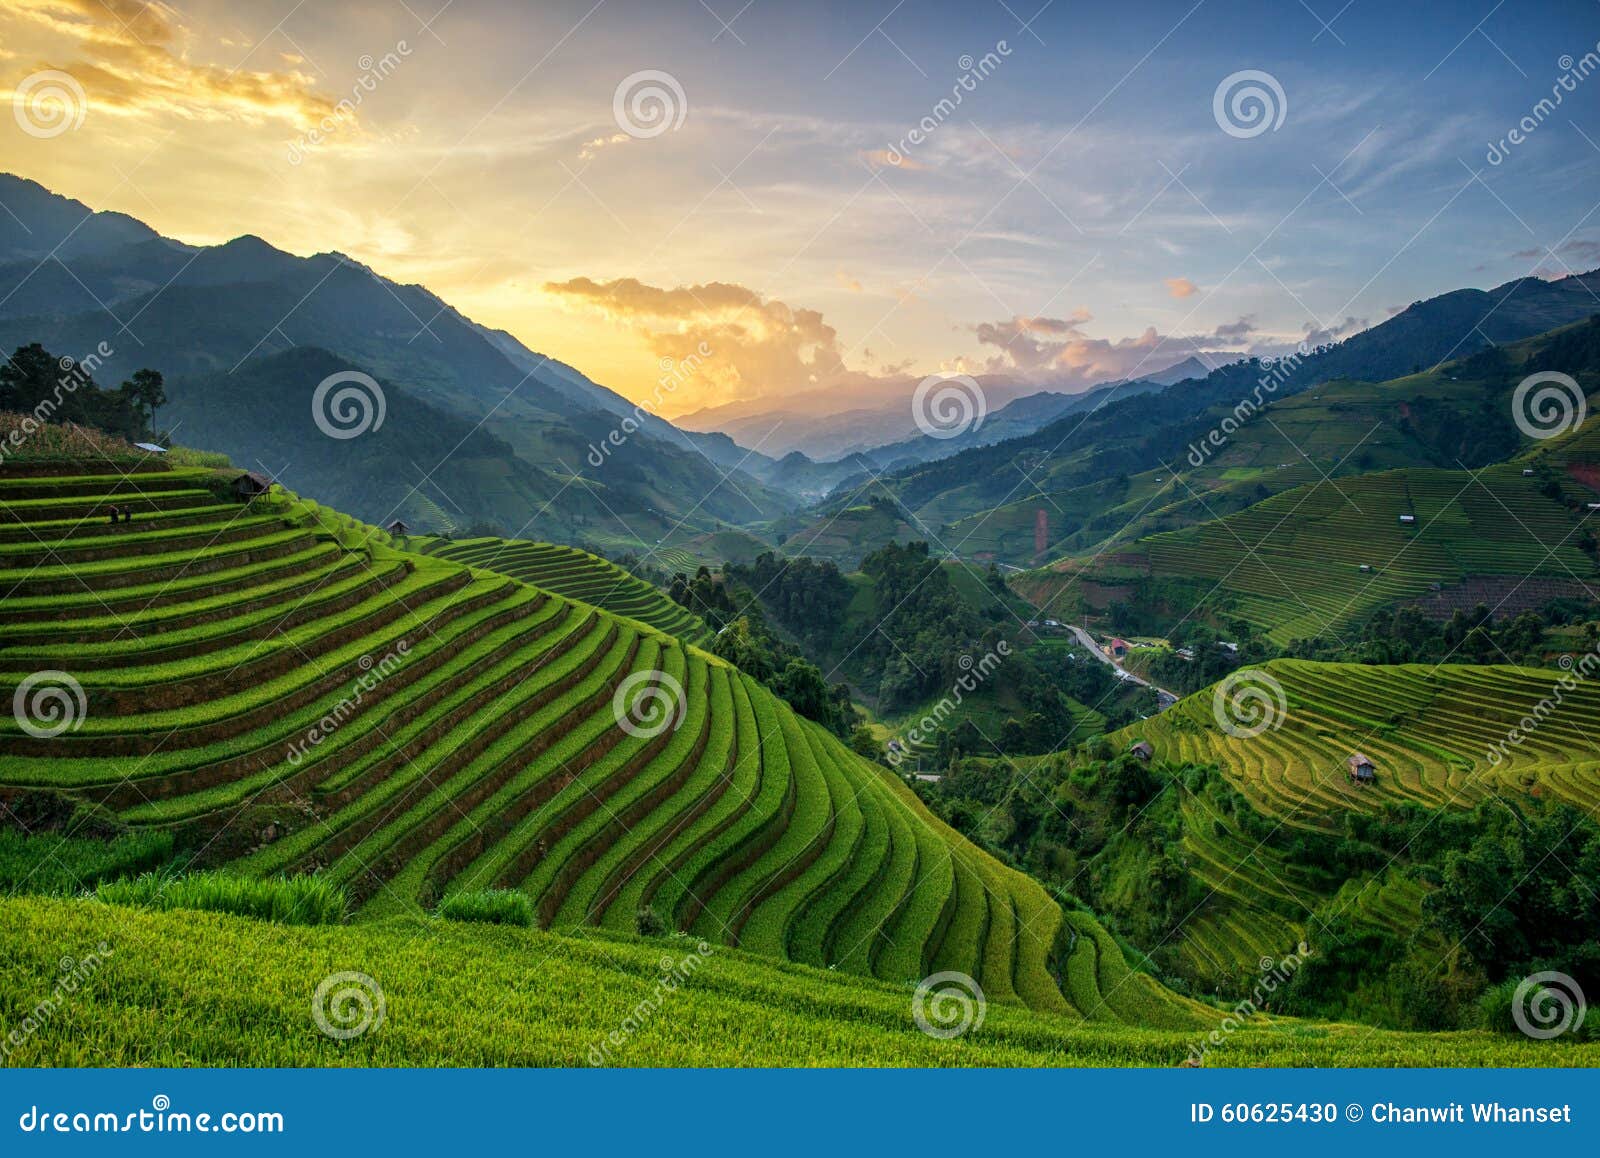 rice fields on terrace